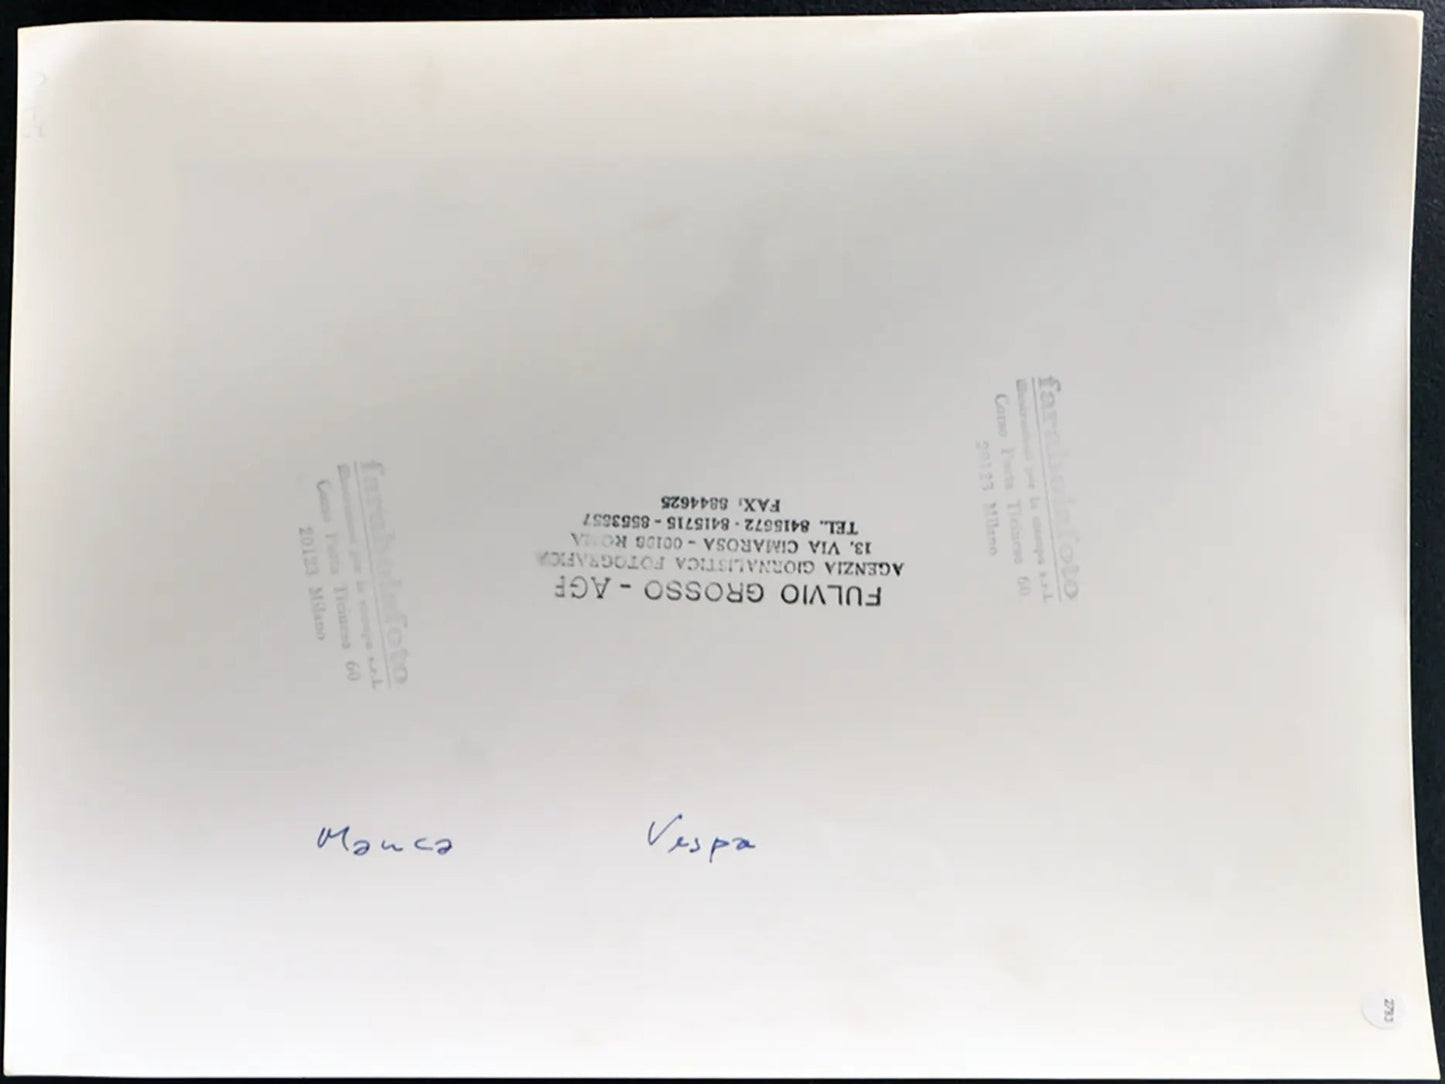 Vespa e Manca anni 90 Ft 2783 - Stampa 24x30 cm - Farabola Stampa ai sali d'argento